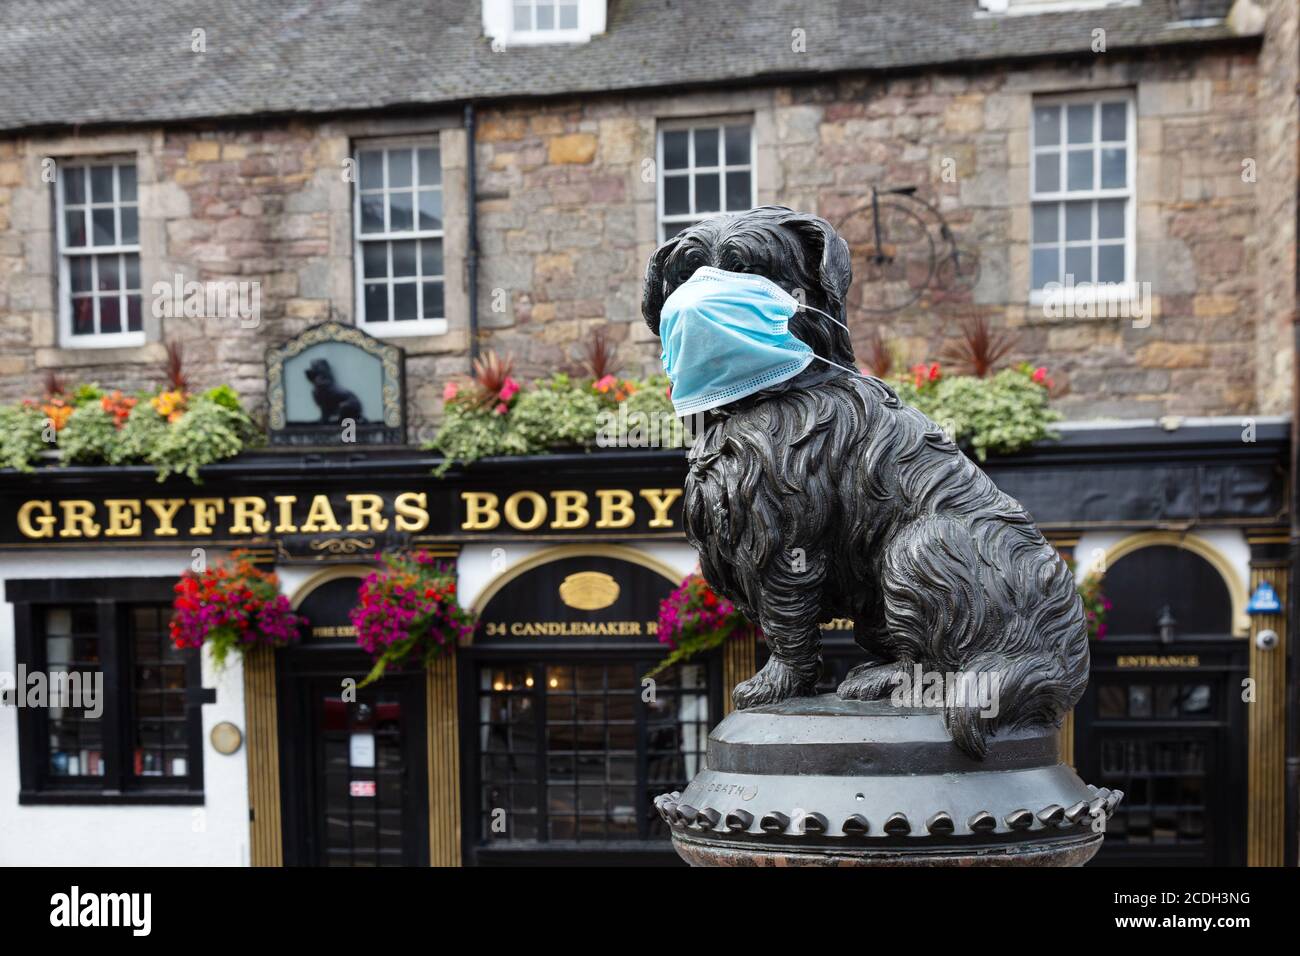 Covid 19 Royaume-Uni; la statue de Greyfriars Bobby avec un masque facial pendant la pandémie du coronavirus, Edinburgh Écosse Royaume-Uni Banque D'Images